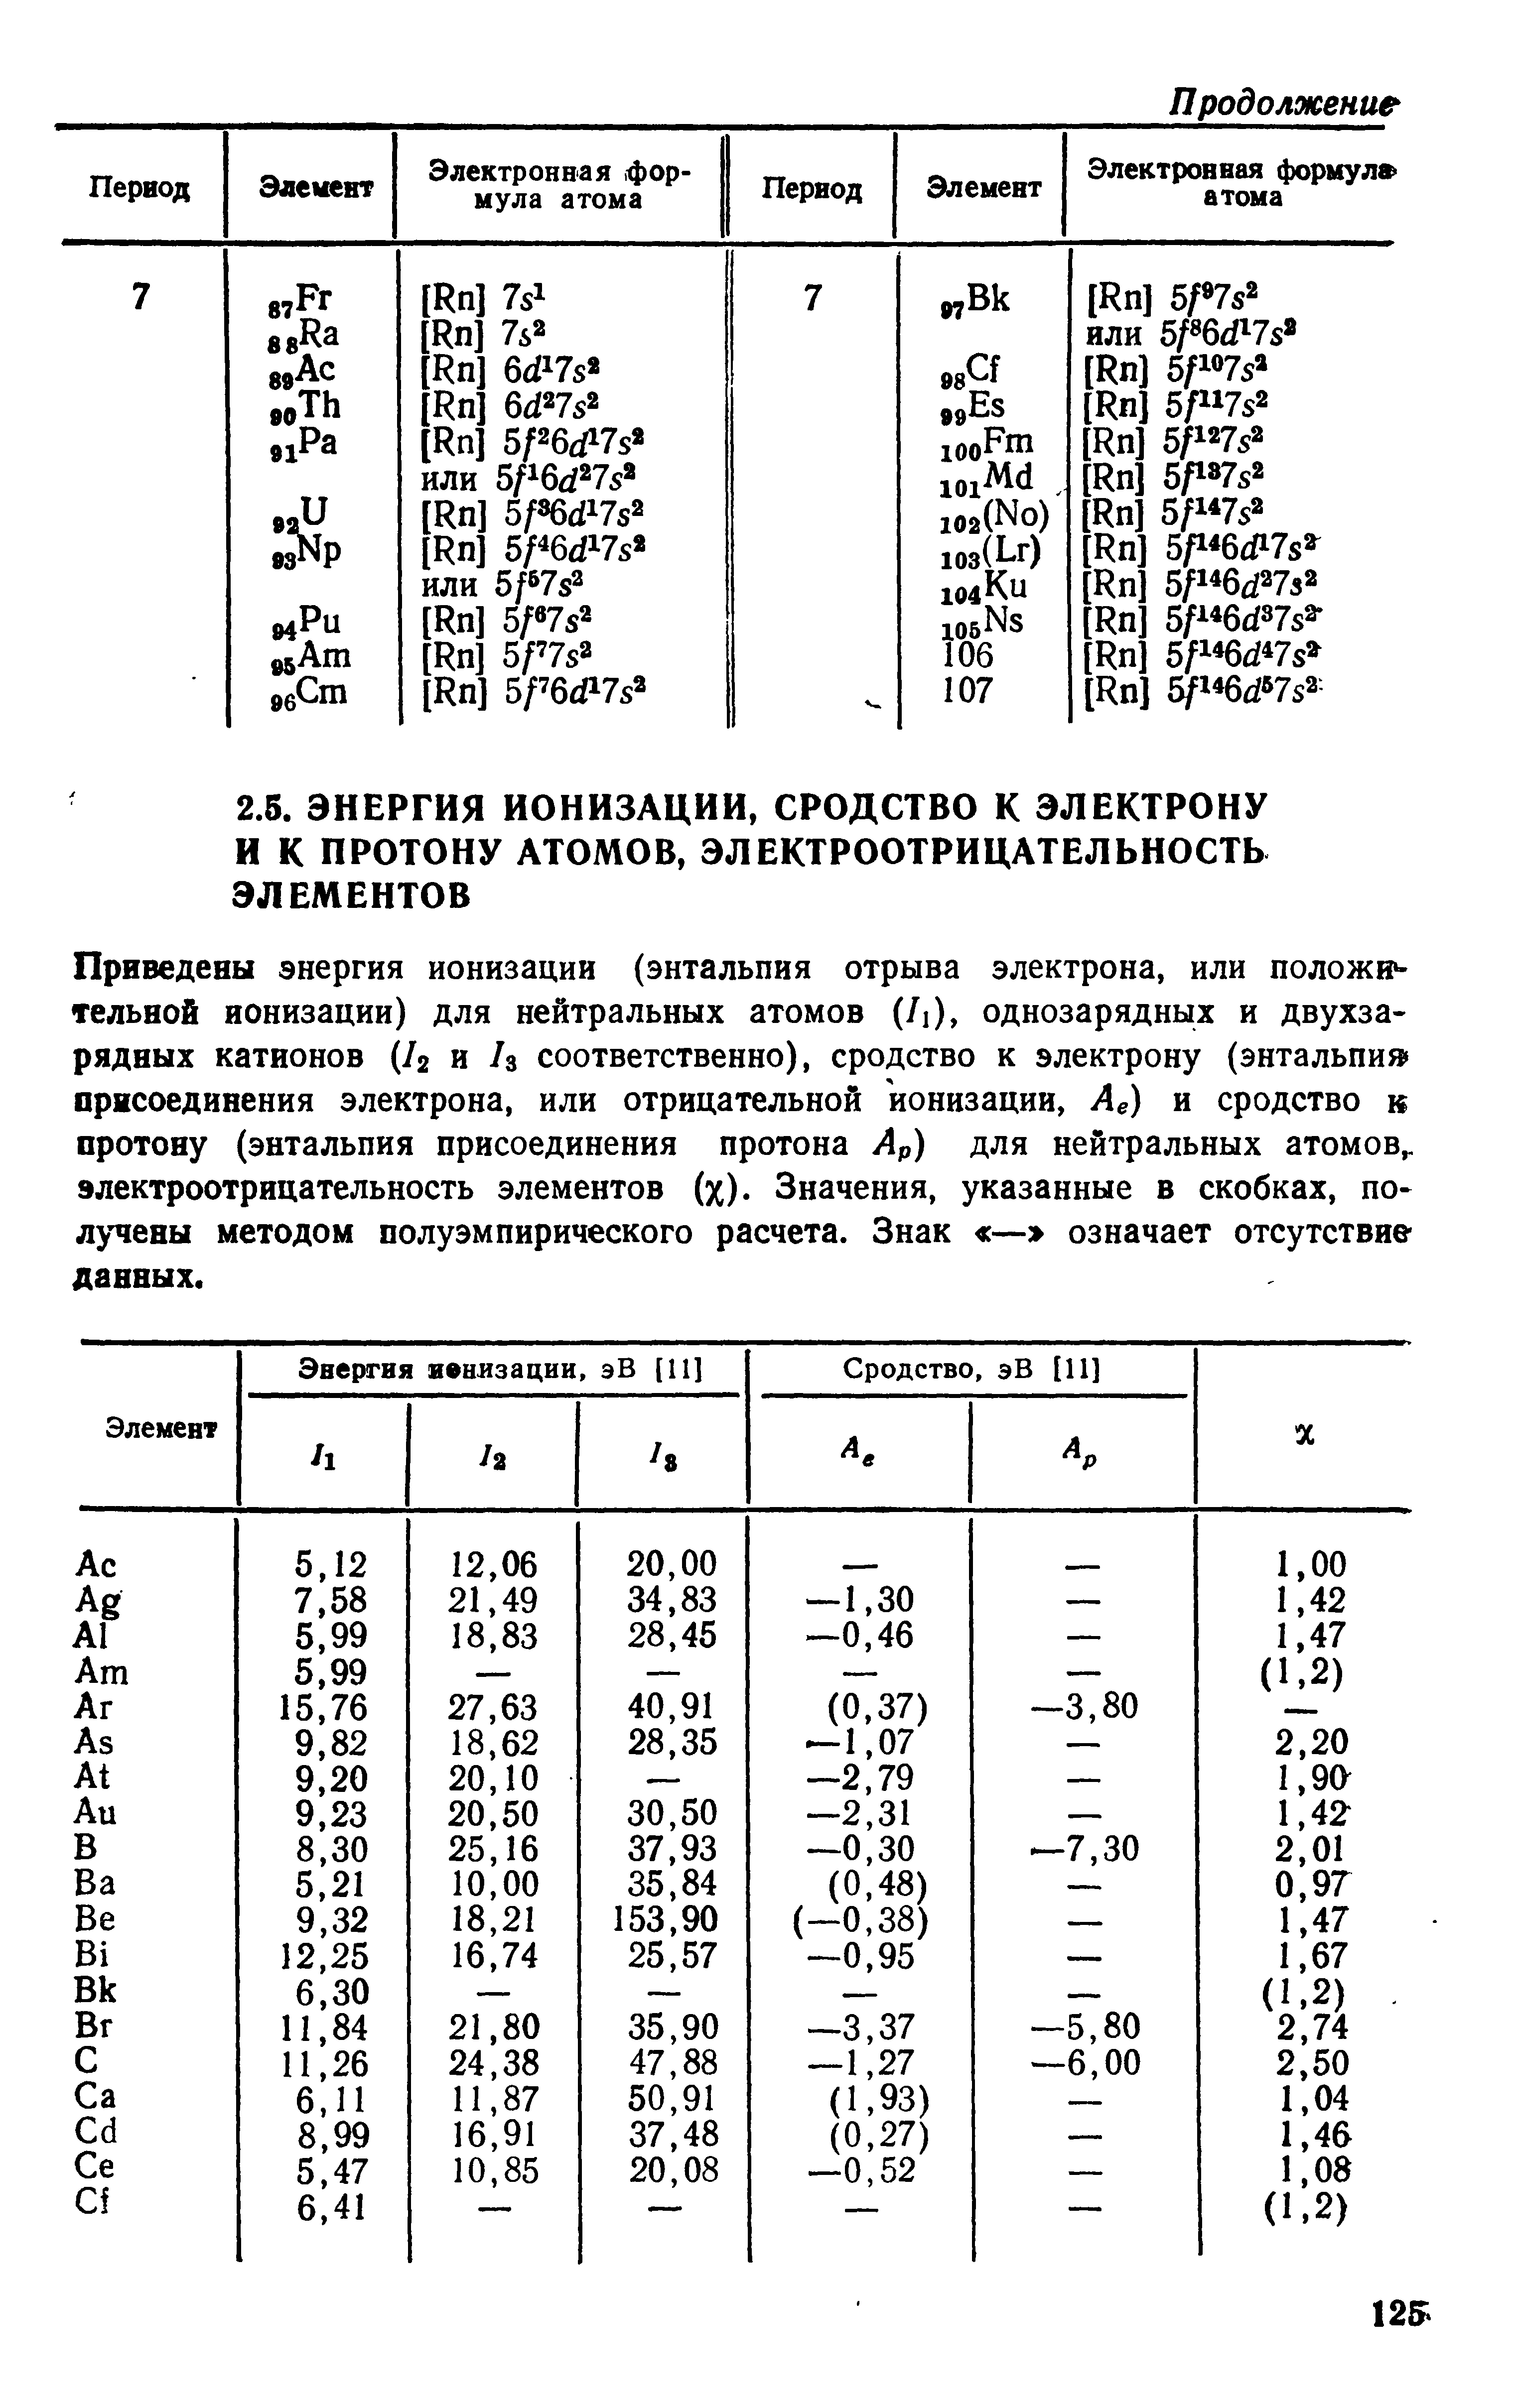 Приведены энергия ионизации (энтальпия отрыва электрона, или положи тельной ионизации) для нейтральных атомов (/1), однозарядных и двухзарядных катионов (/2 и /з соответственно), сродство к электрону (энтальпия присоединения электрона, или отрицательной ионизации, Ае) и сродство к протону (энтальпия присоединения протона Ар) для нейтральных атомов,, электроотрицательность элементов (х). Значения, указанные в скобках, получены методом полуэмпирического расчета. Знак — означает отсутствие данных.